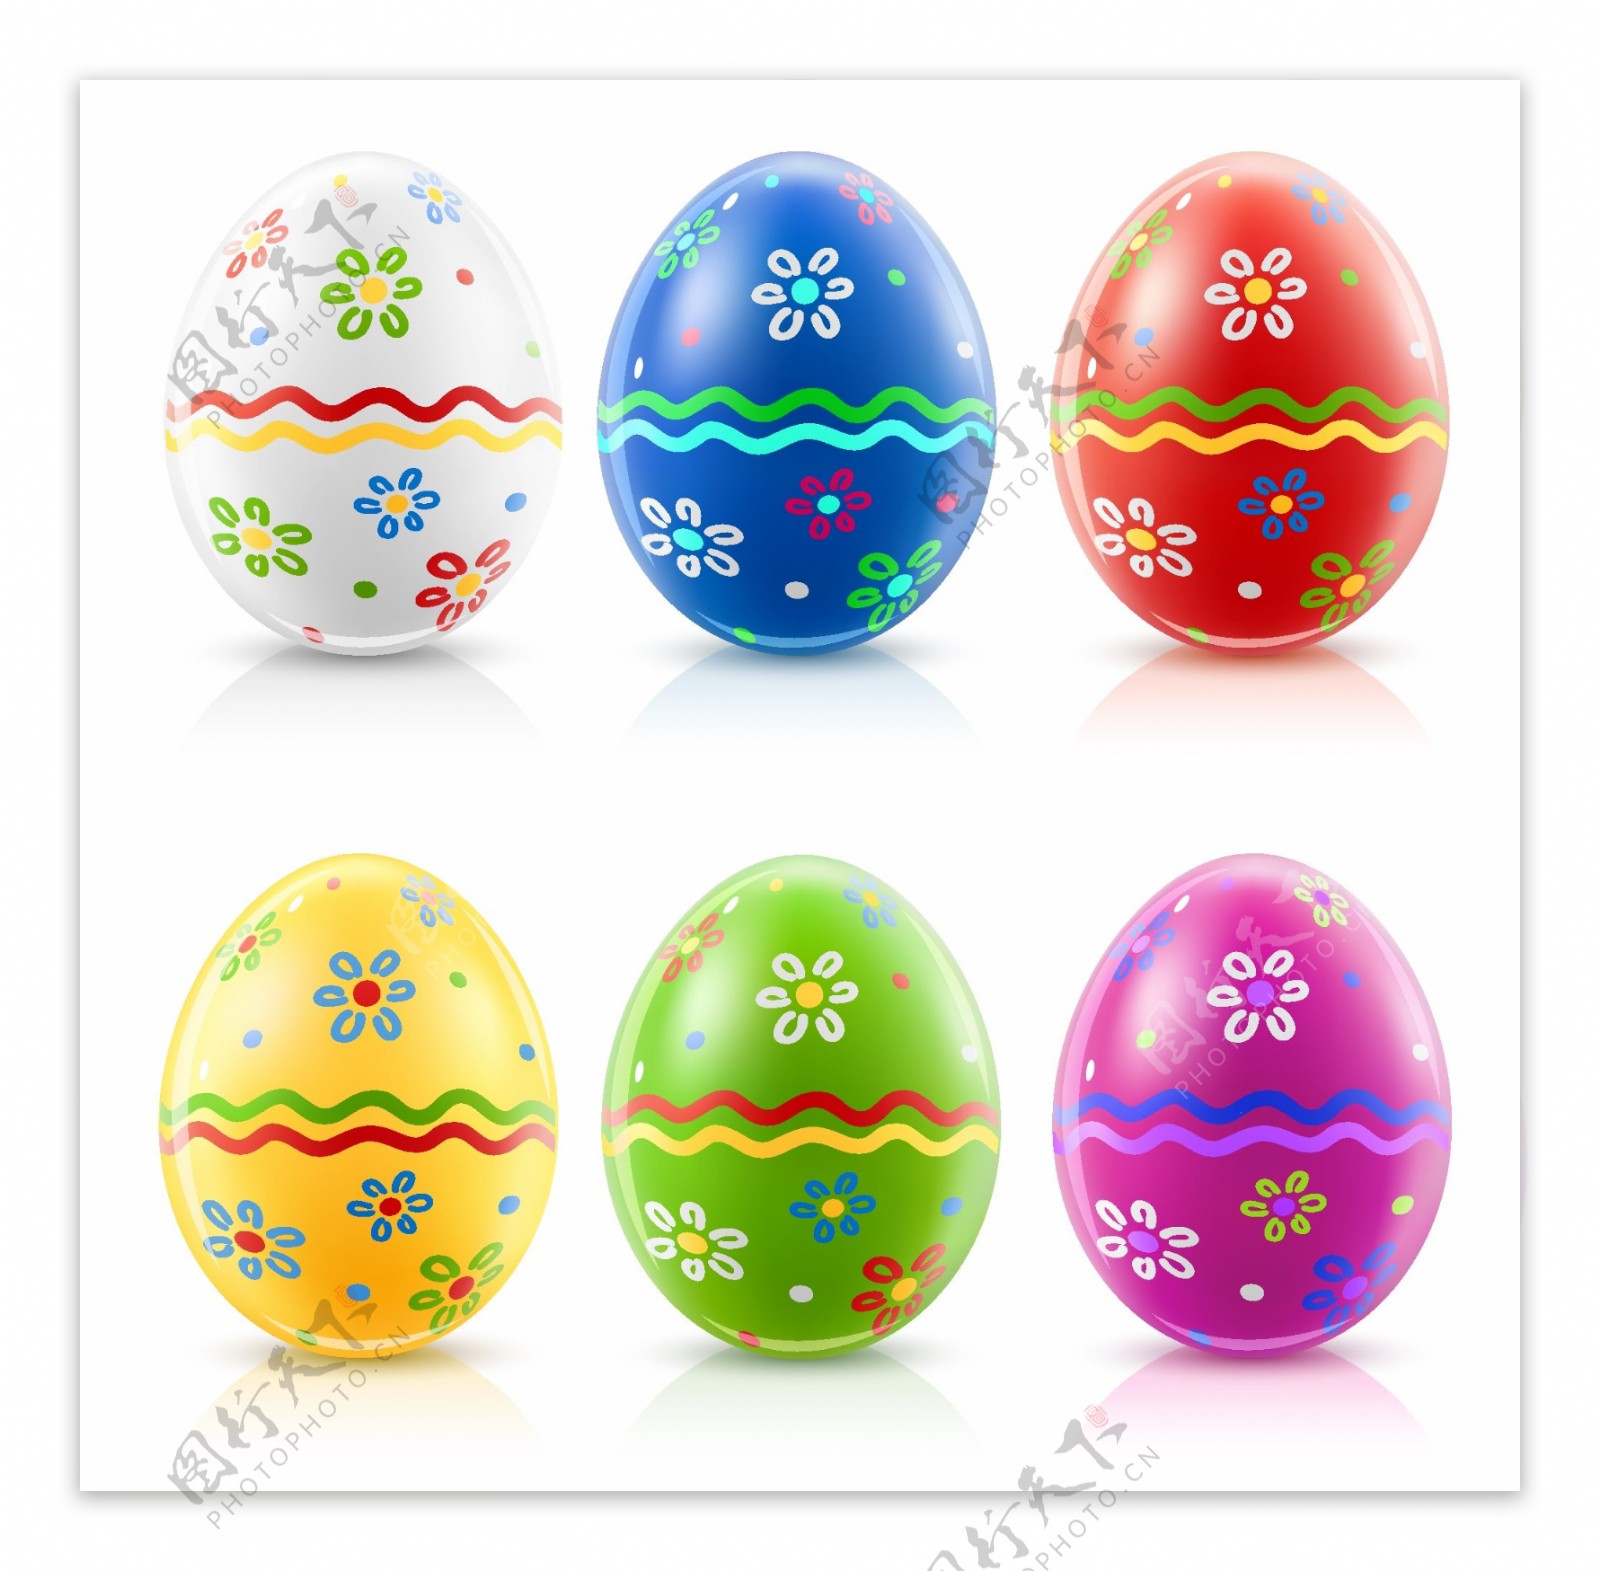 复活节彩蛋的特征矢量素材的复活节彩蛋的特征